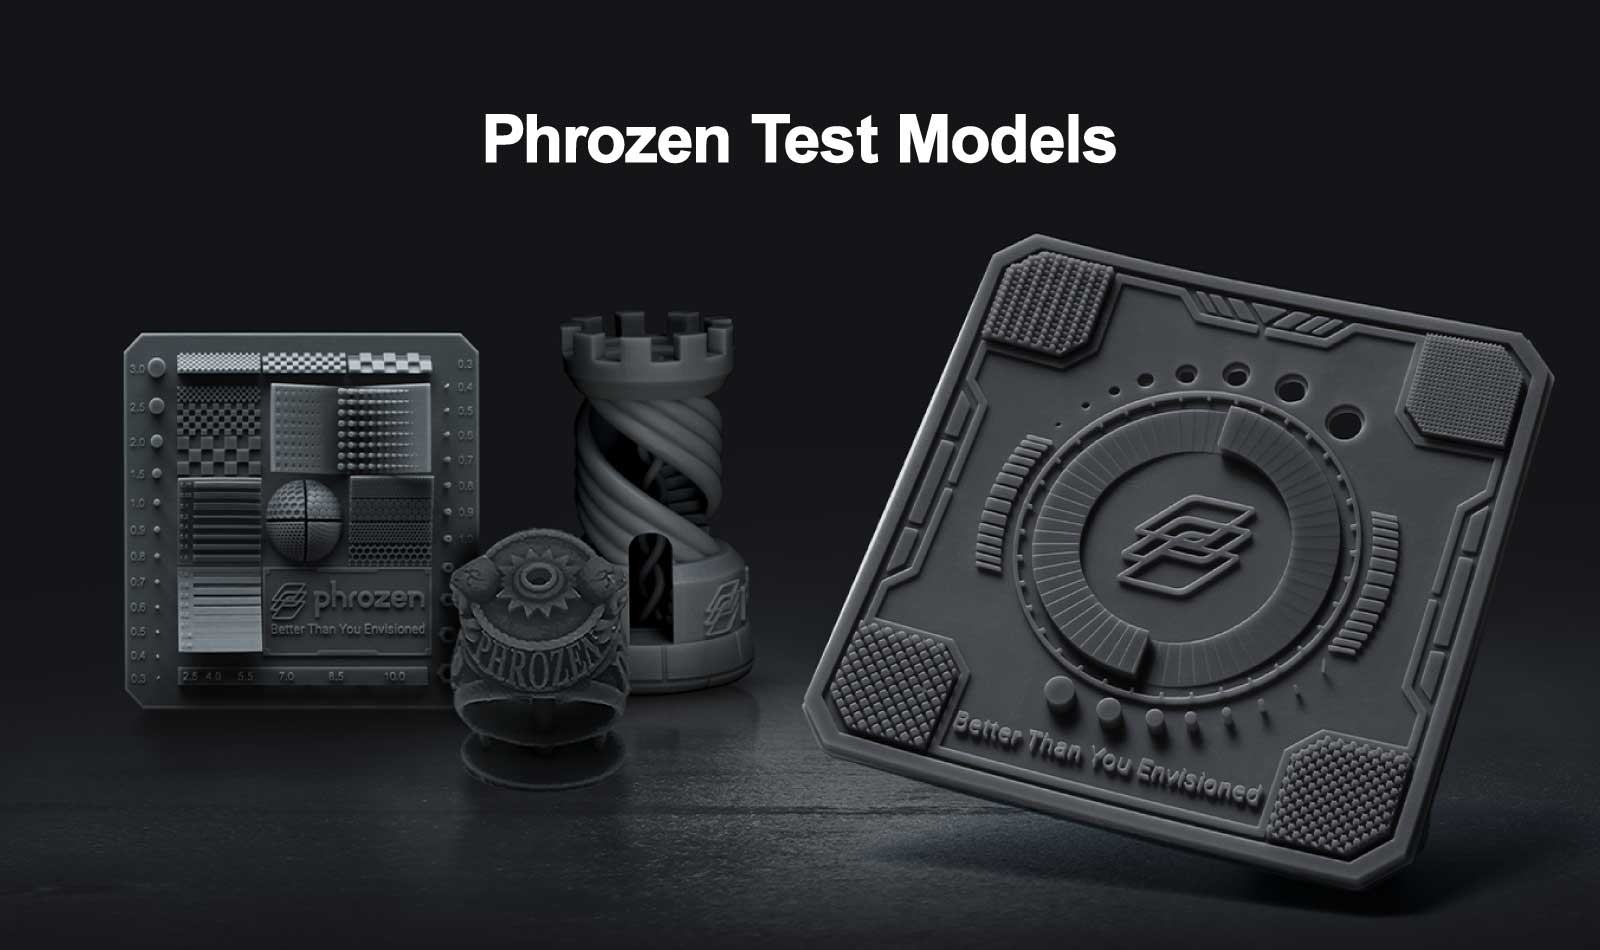 Phrozen Test Models: XP Finder, RP Finder, Phrozen Rook, Phrozen Ring